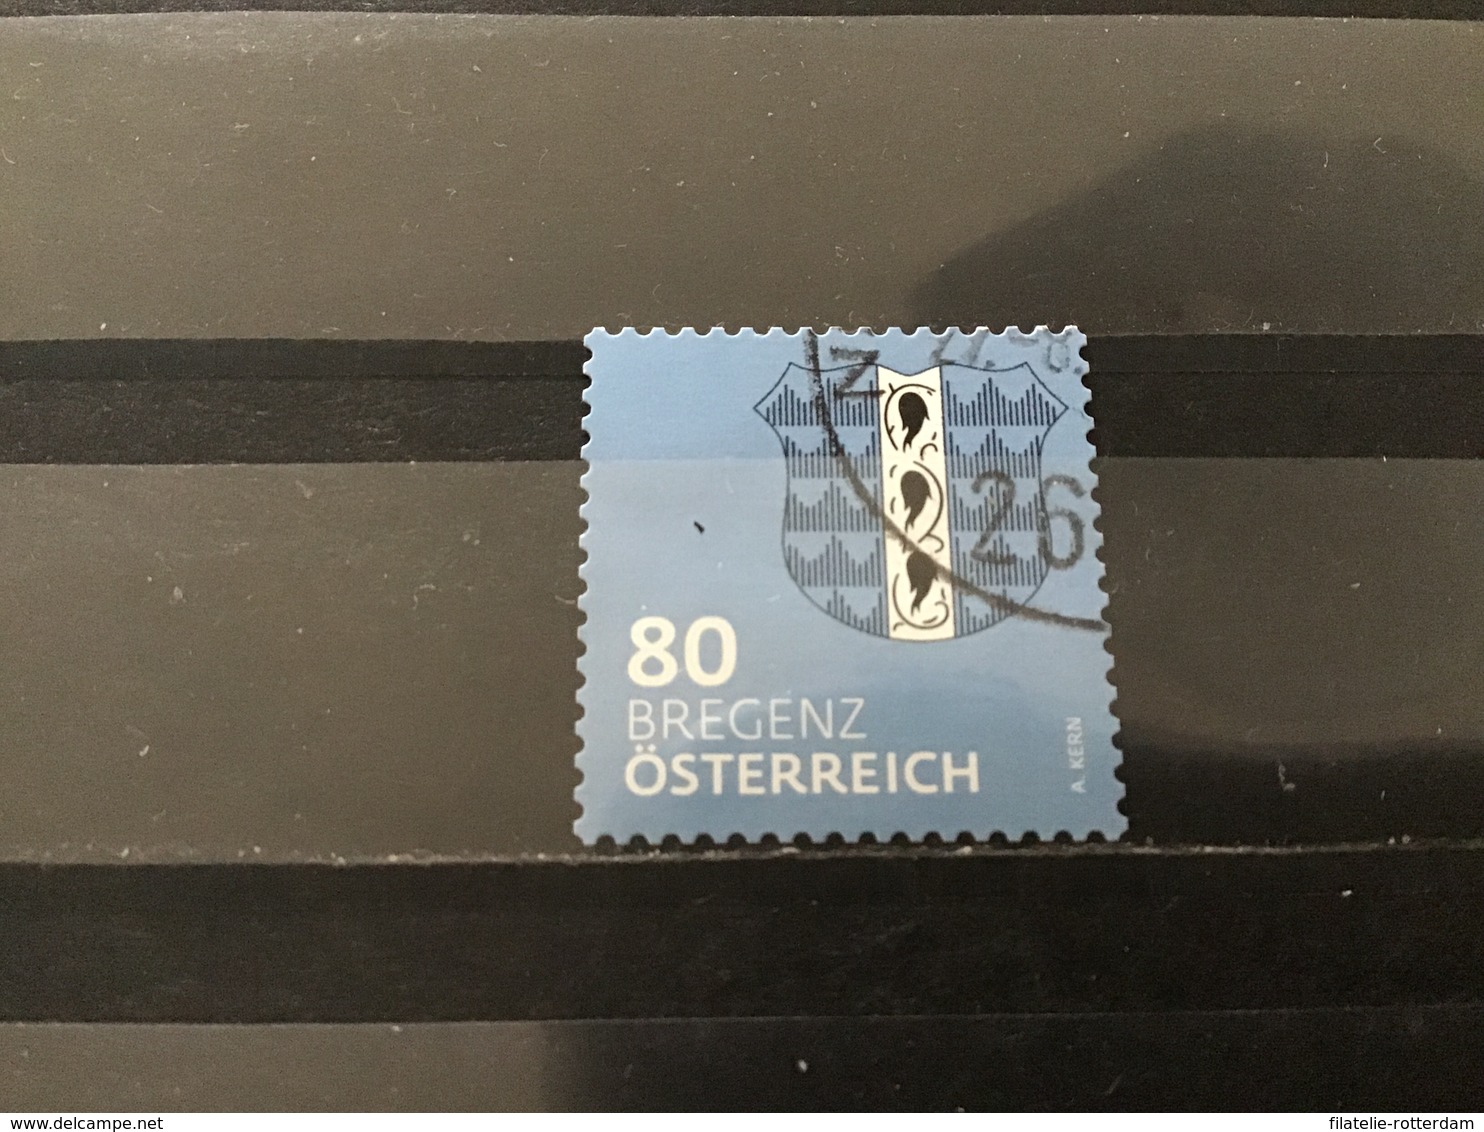 Oostenrijk / Austria - Wapenschild Bregenz (80) 2018 - Gebruikt